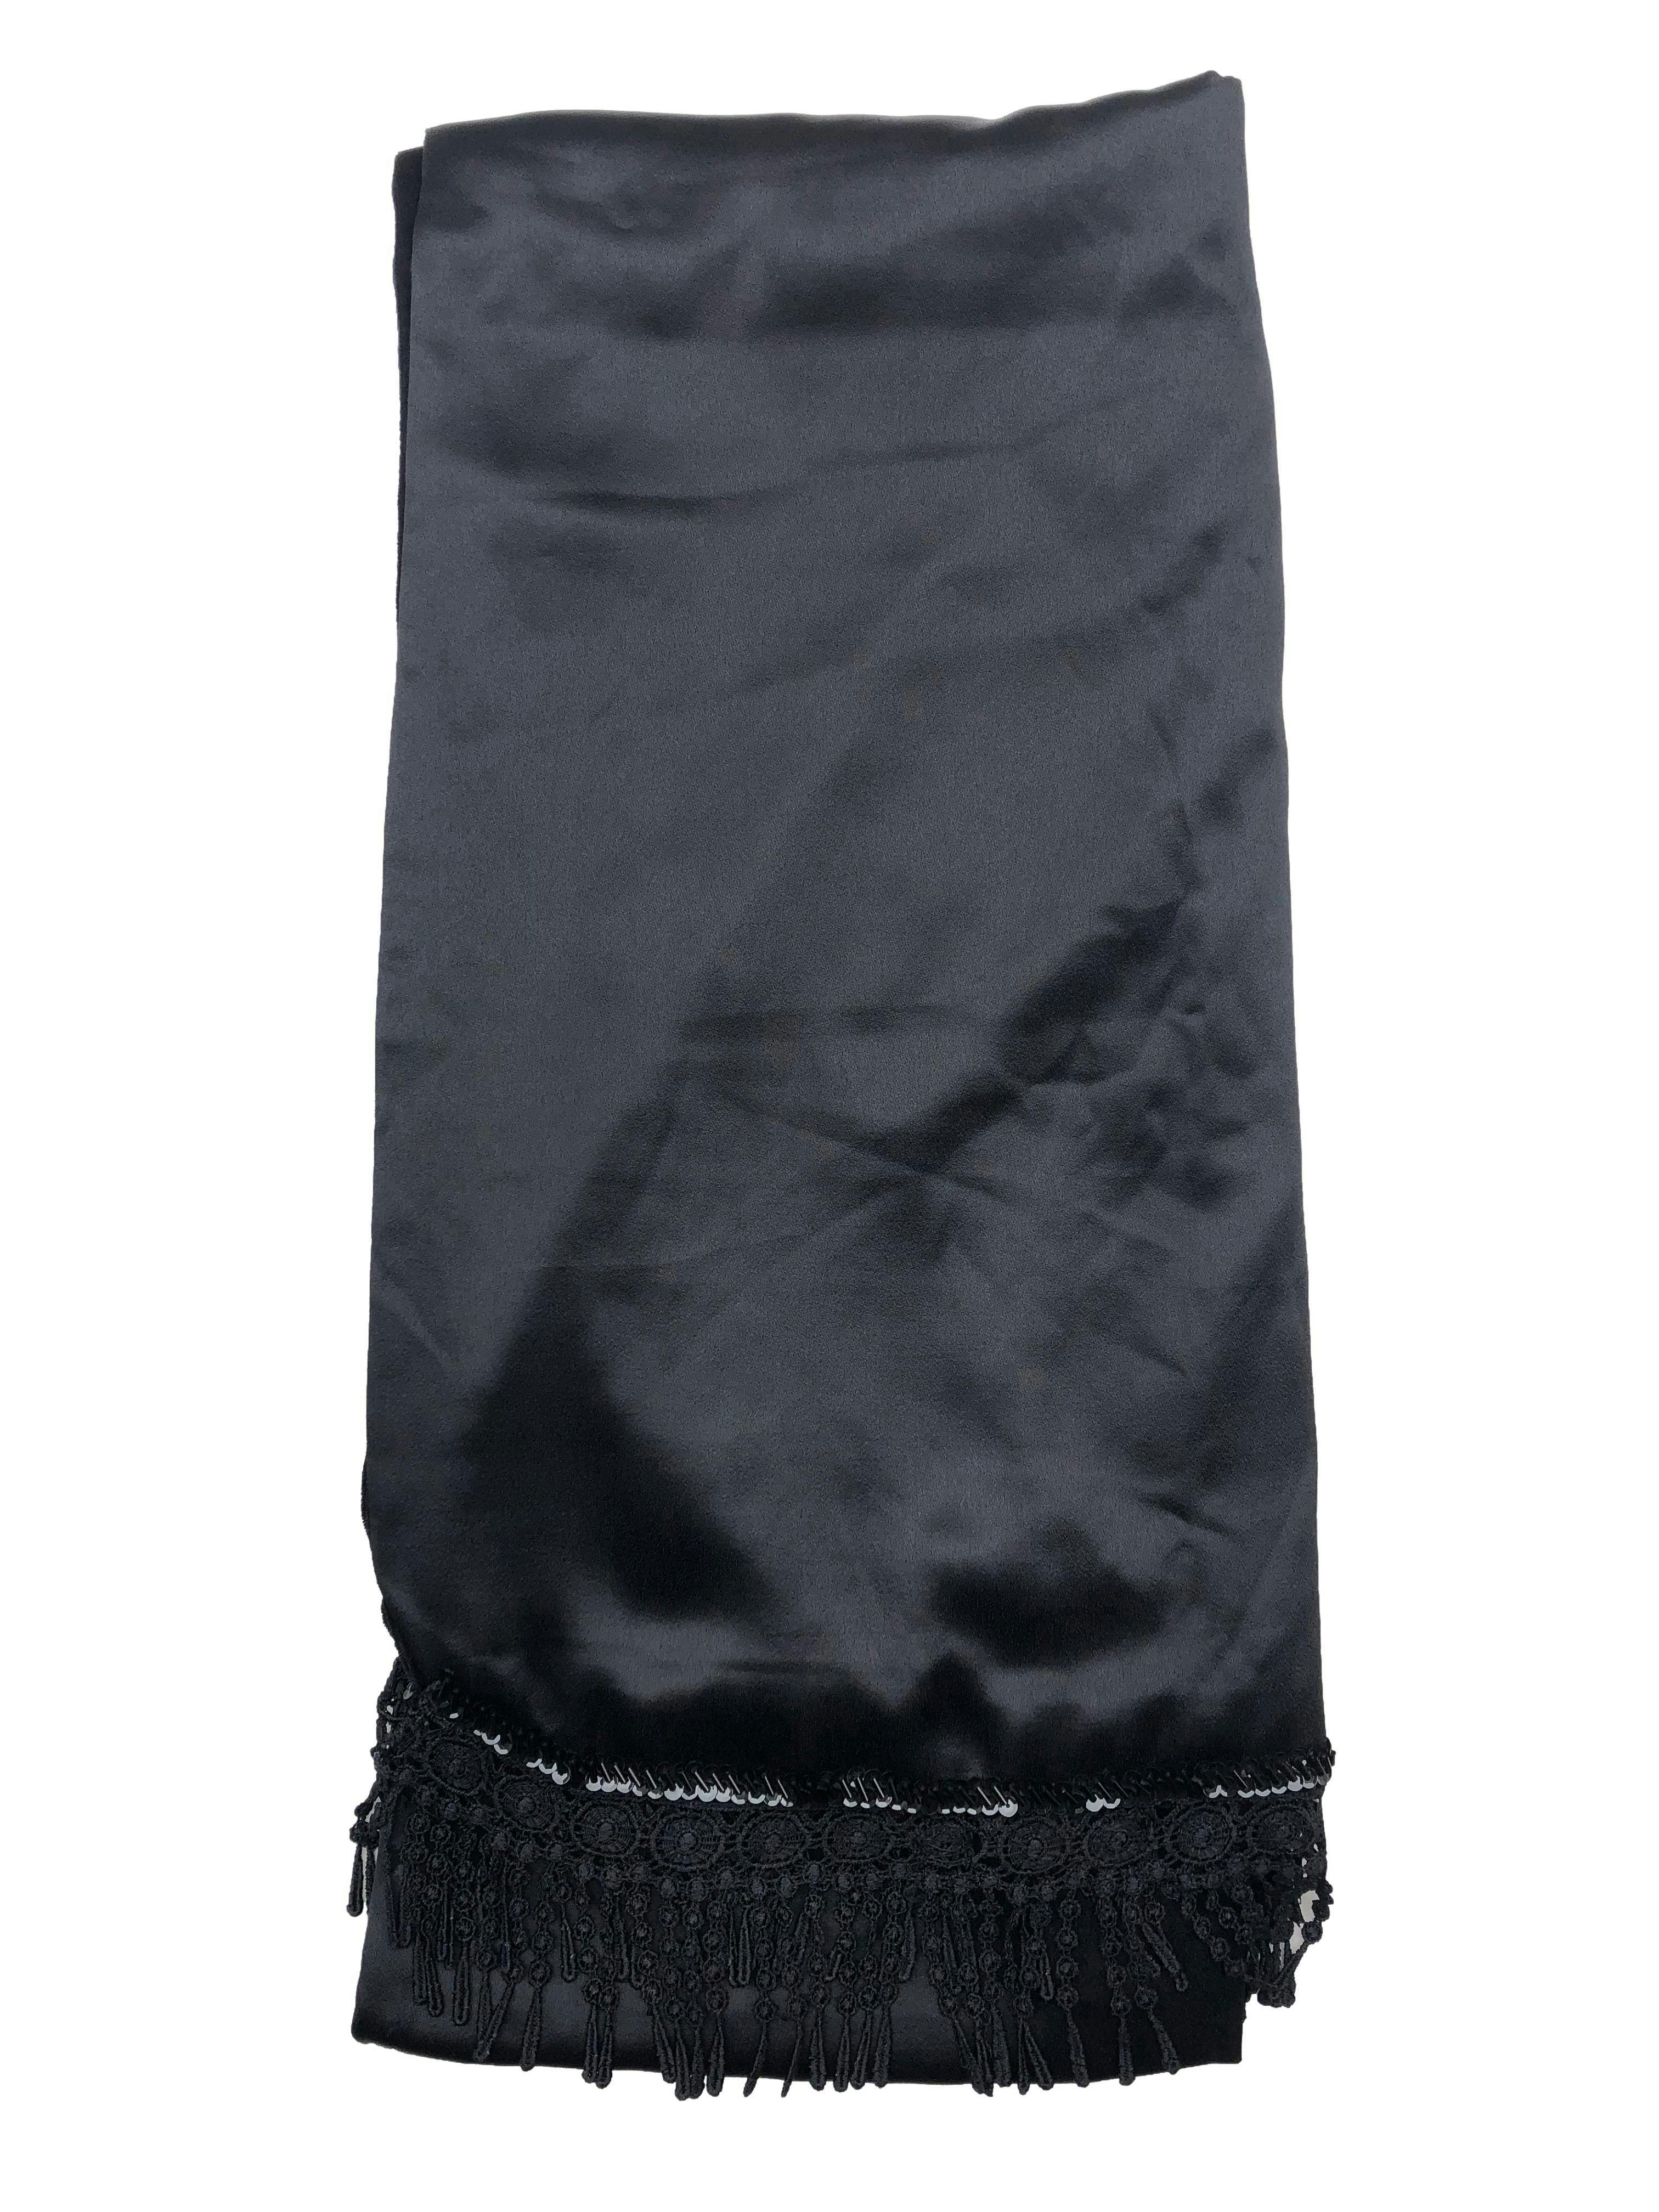 Chal negro reversible, una cara de terciopelo y la otra de satén, con mostacillas y encaje en bordes. Medidas 55x 115cm.